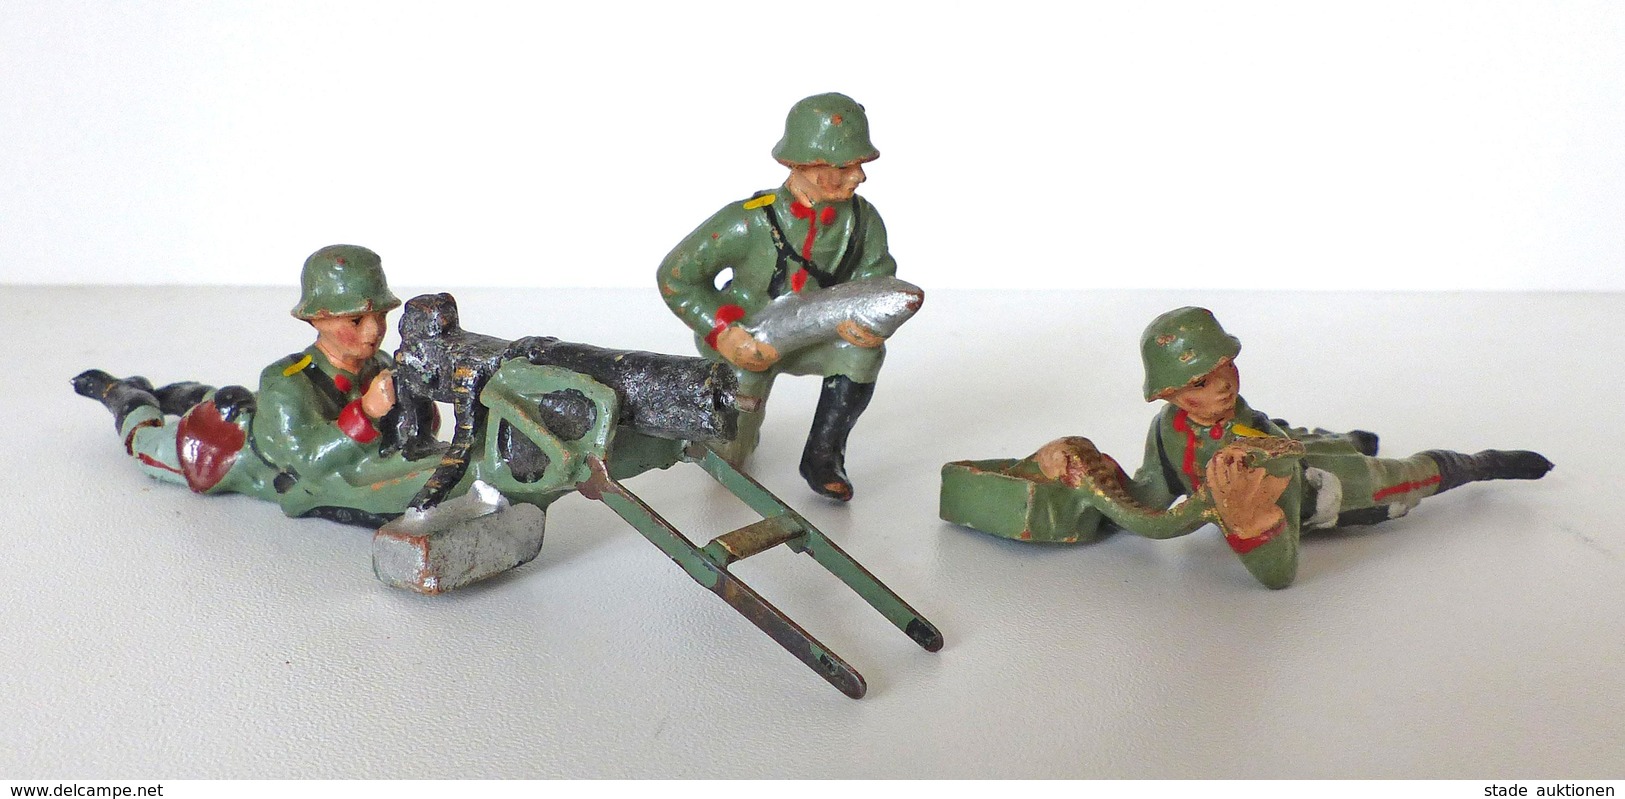 Zwischenkriegszeit Wehrmacht Lineol U. Elastin Figuren 3 Soldaten 1x Mit SMG 1x MG Munition 1x Minenwerfer Bespielt I-II - History